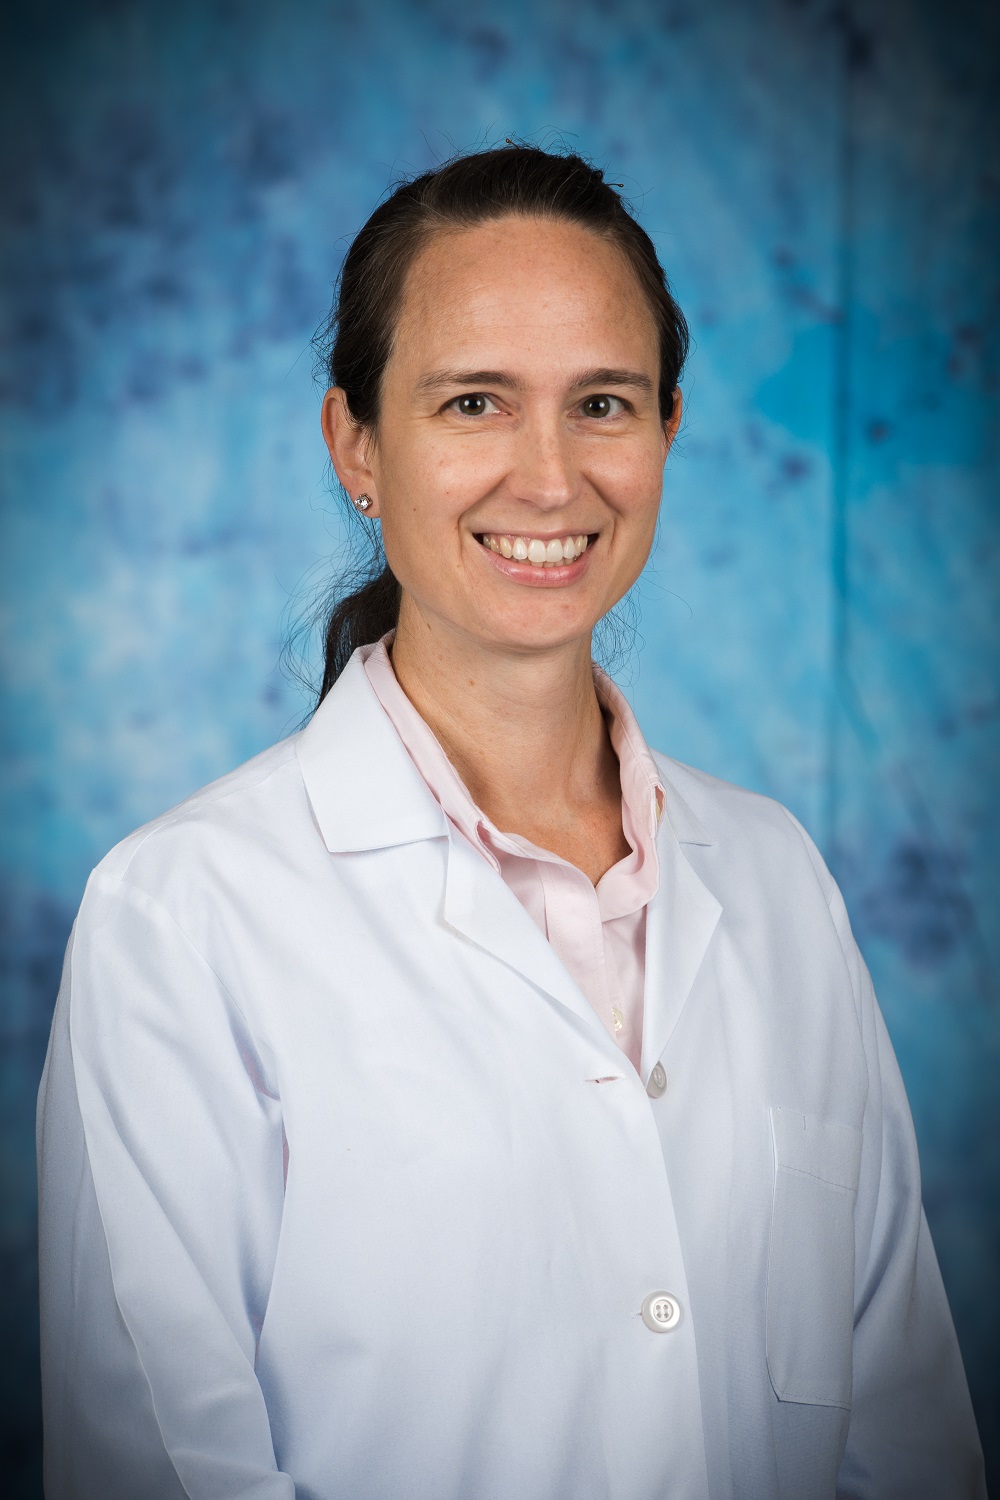 Allison Locke, MD of Oak Ridge Gastroenterology Associates